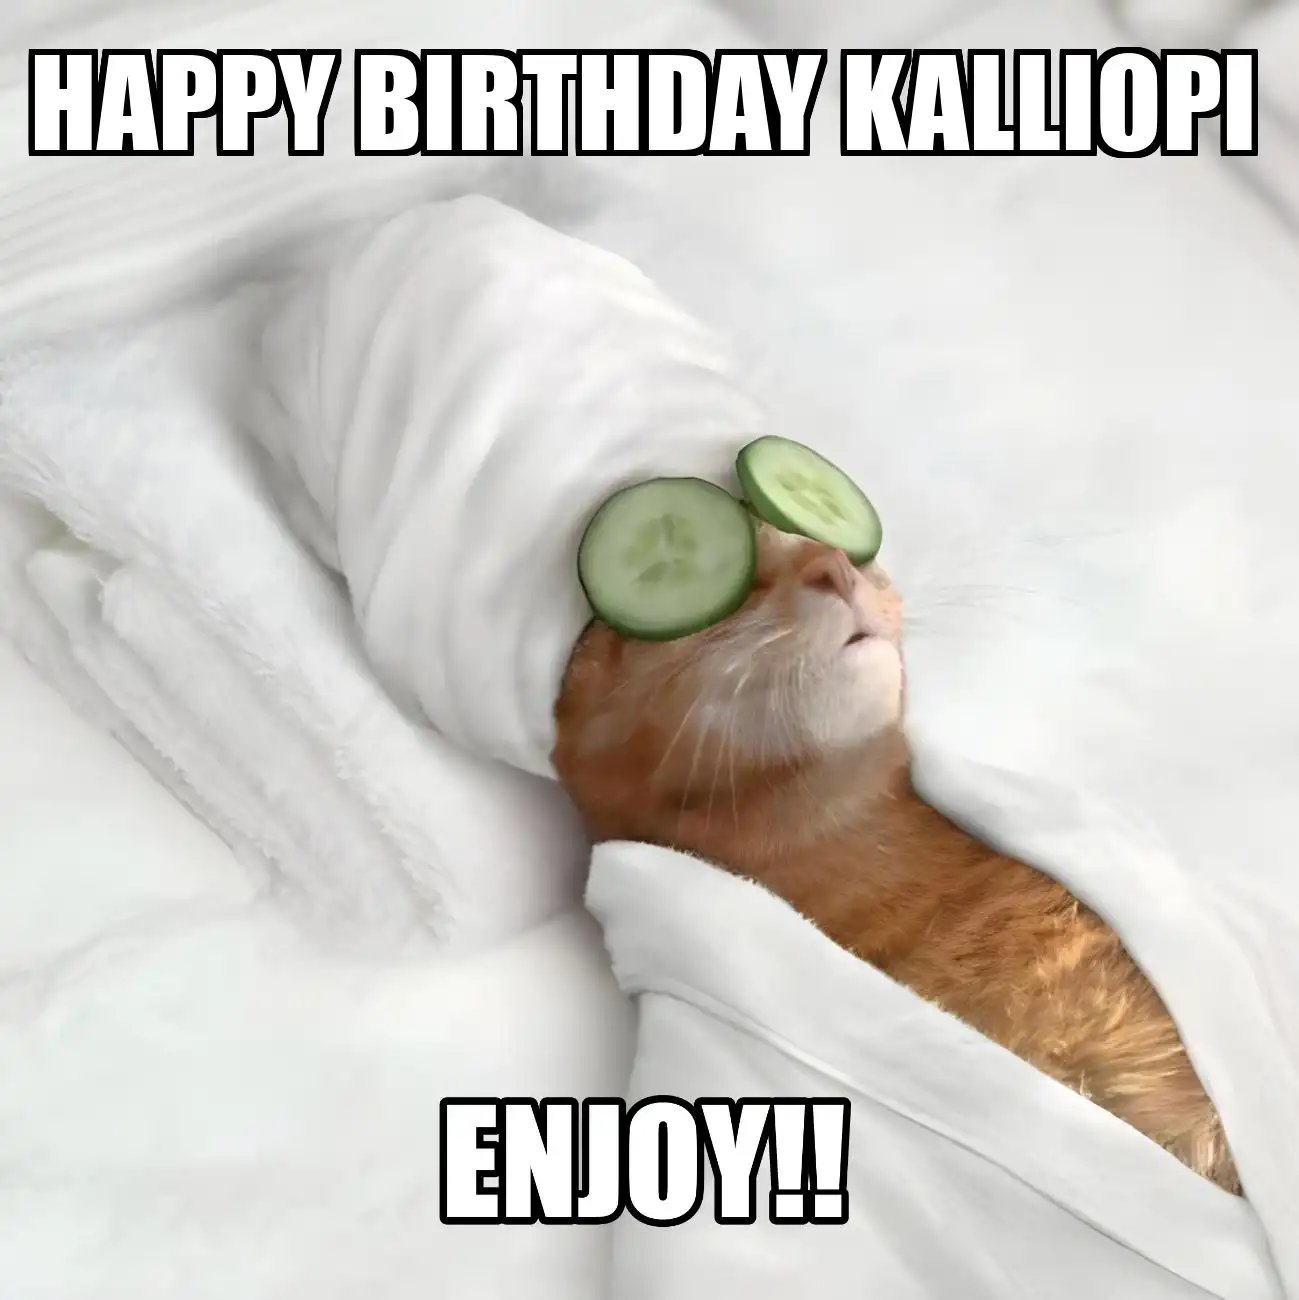 Happy Birthday Kalliopi Enjoy Cat Meme